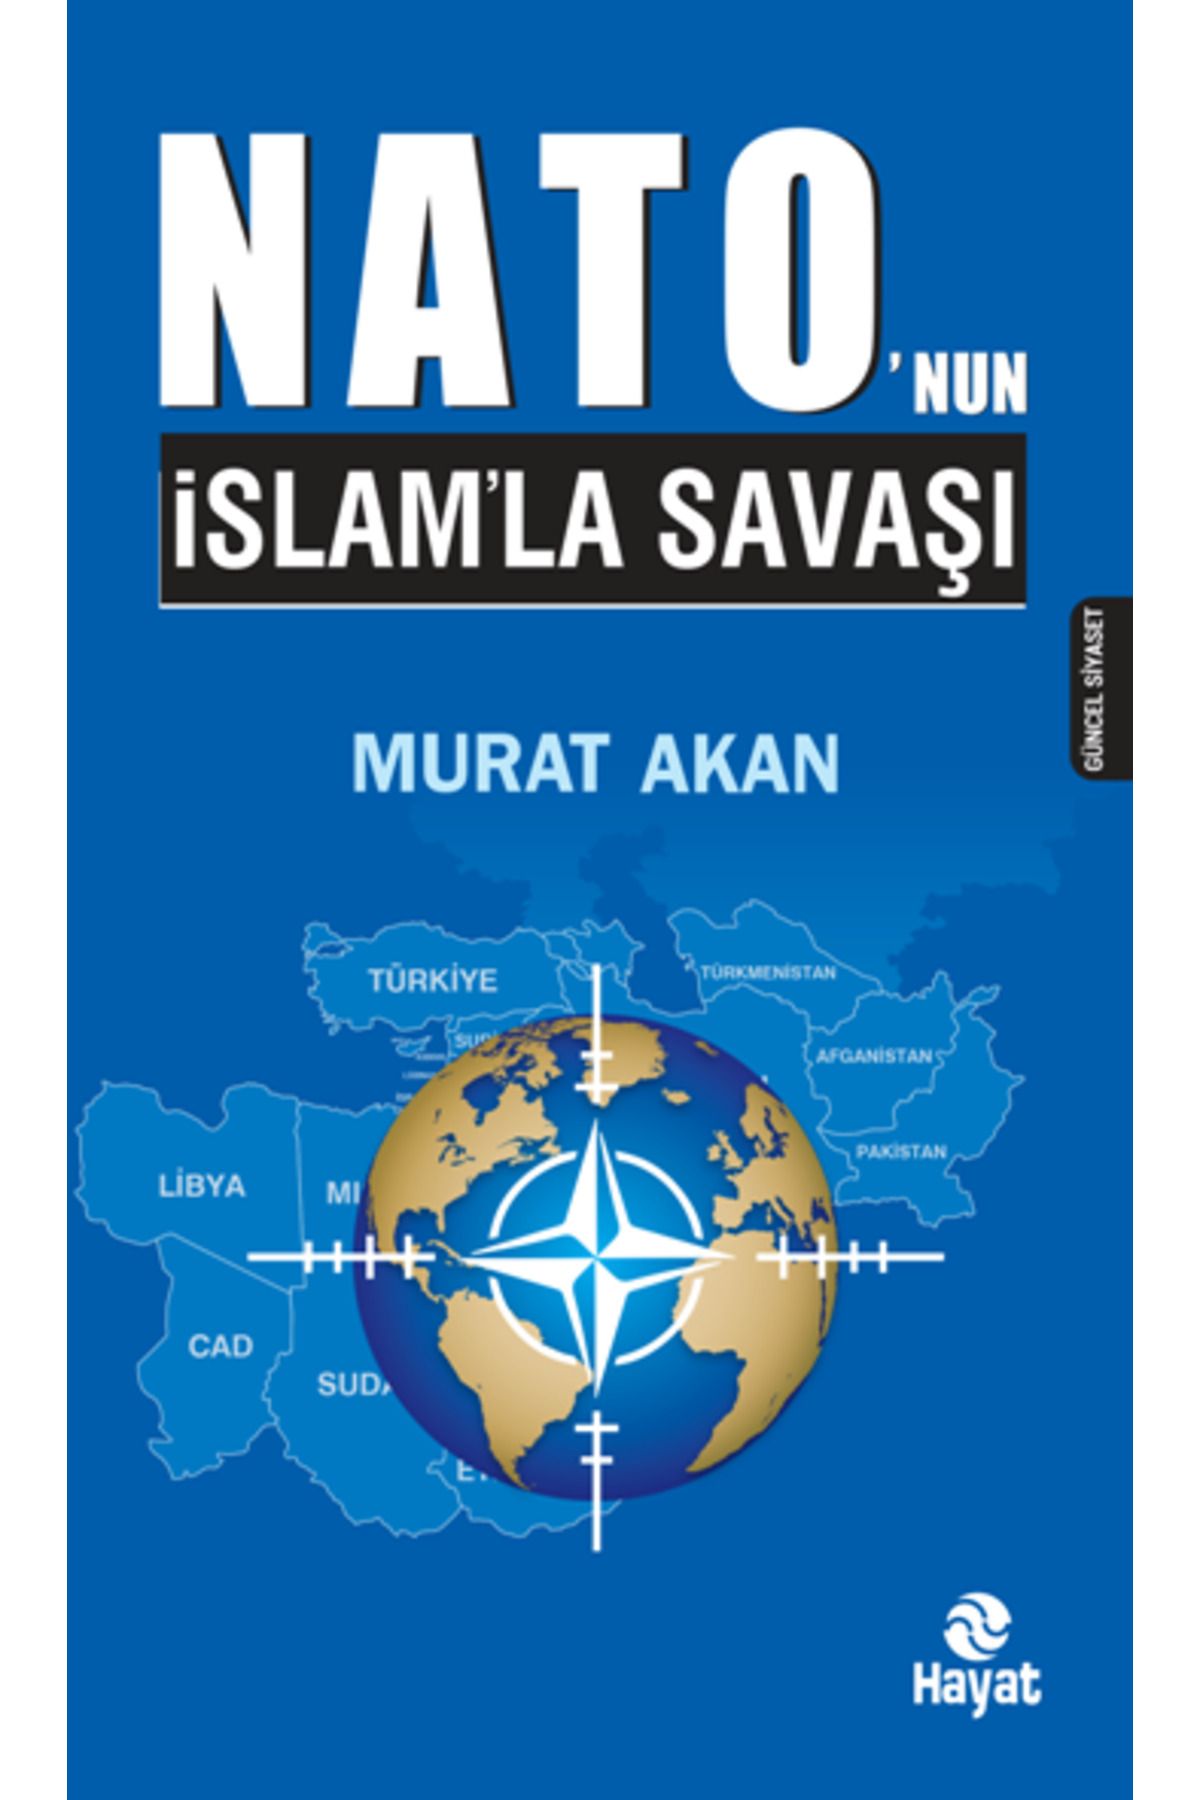 Hayat Yayınları Nato'nun Islam'la Savaşı